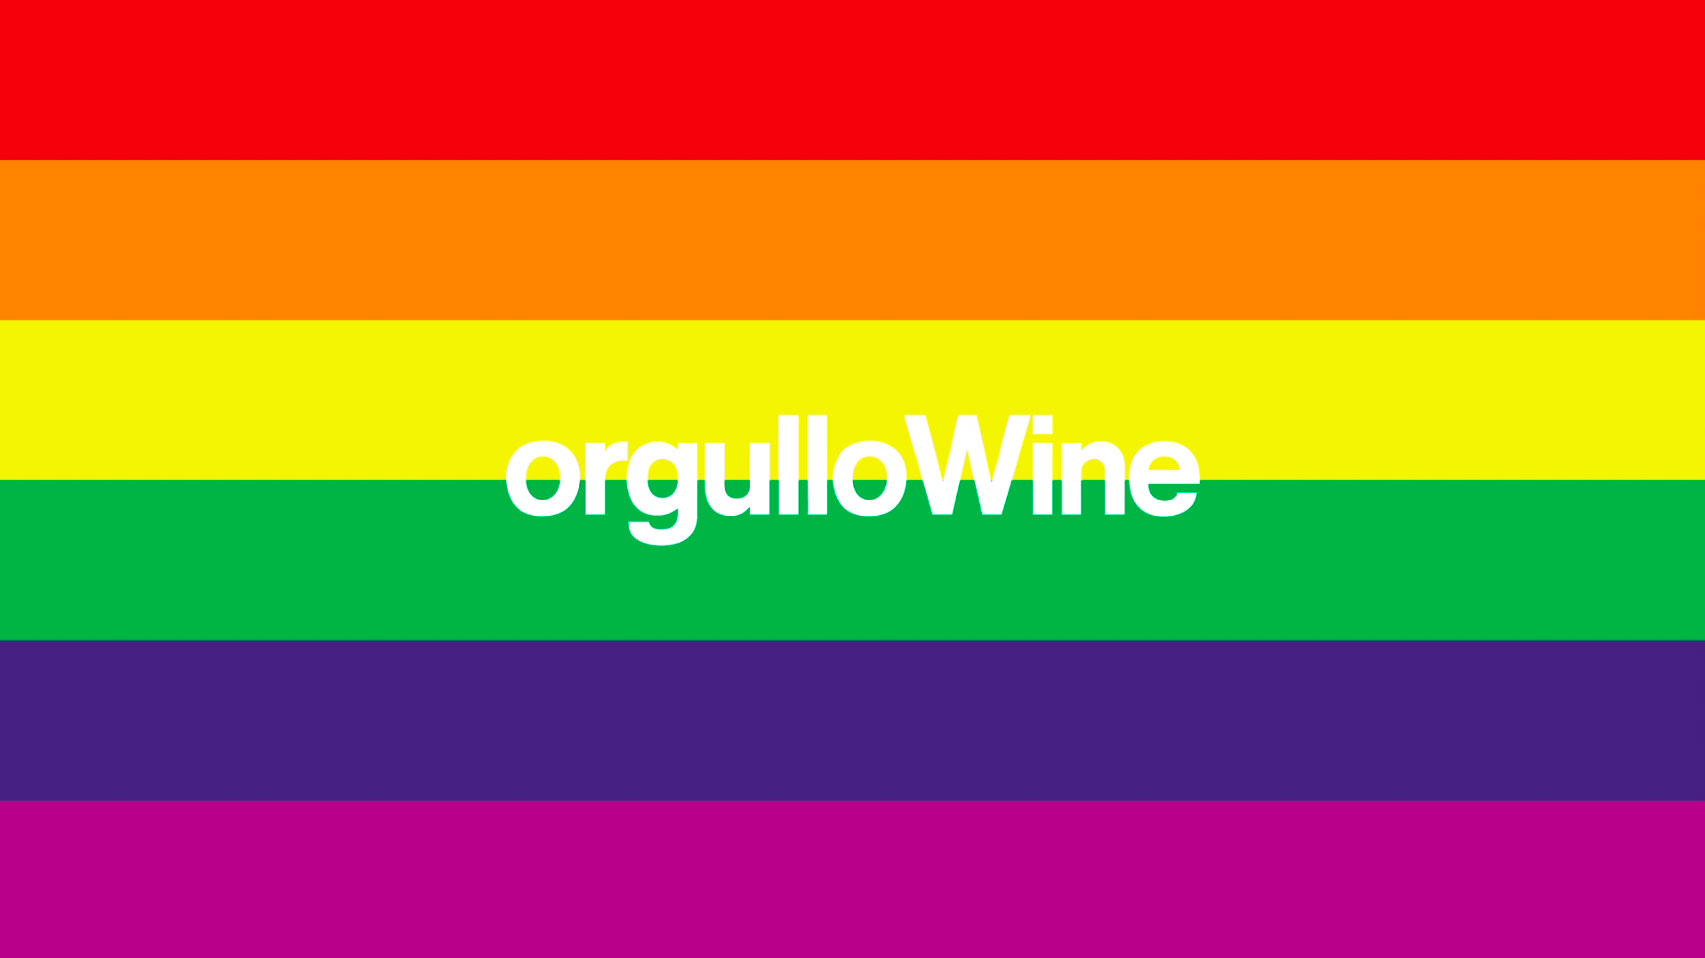 ORGULLO WINE